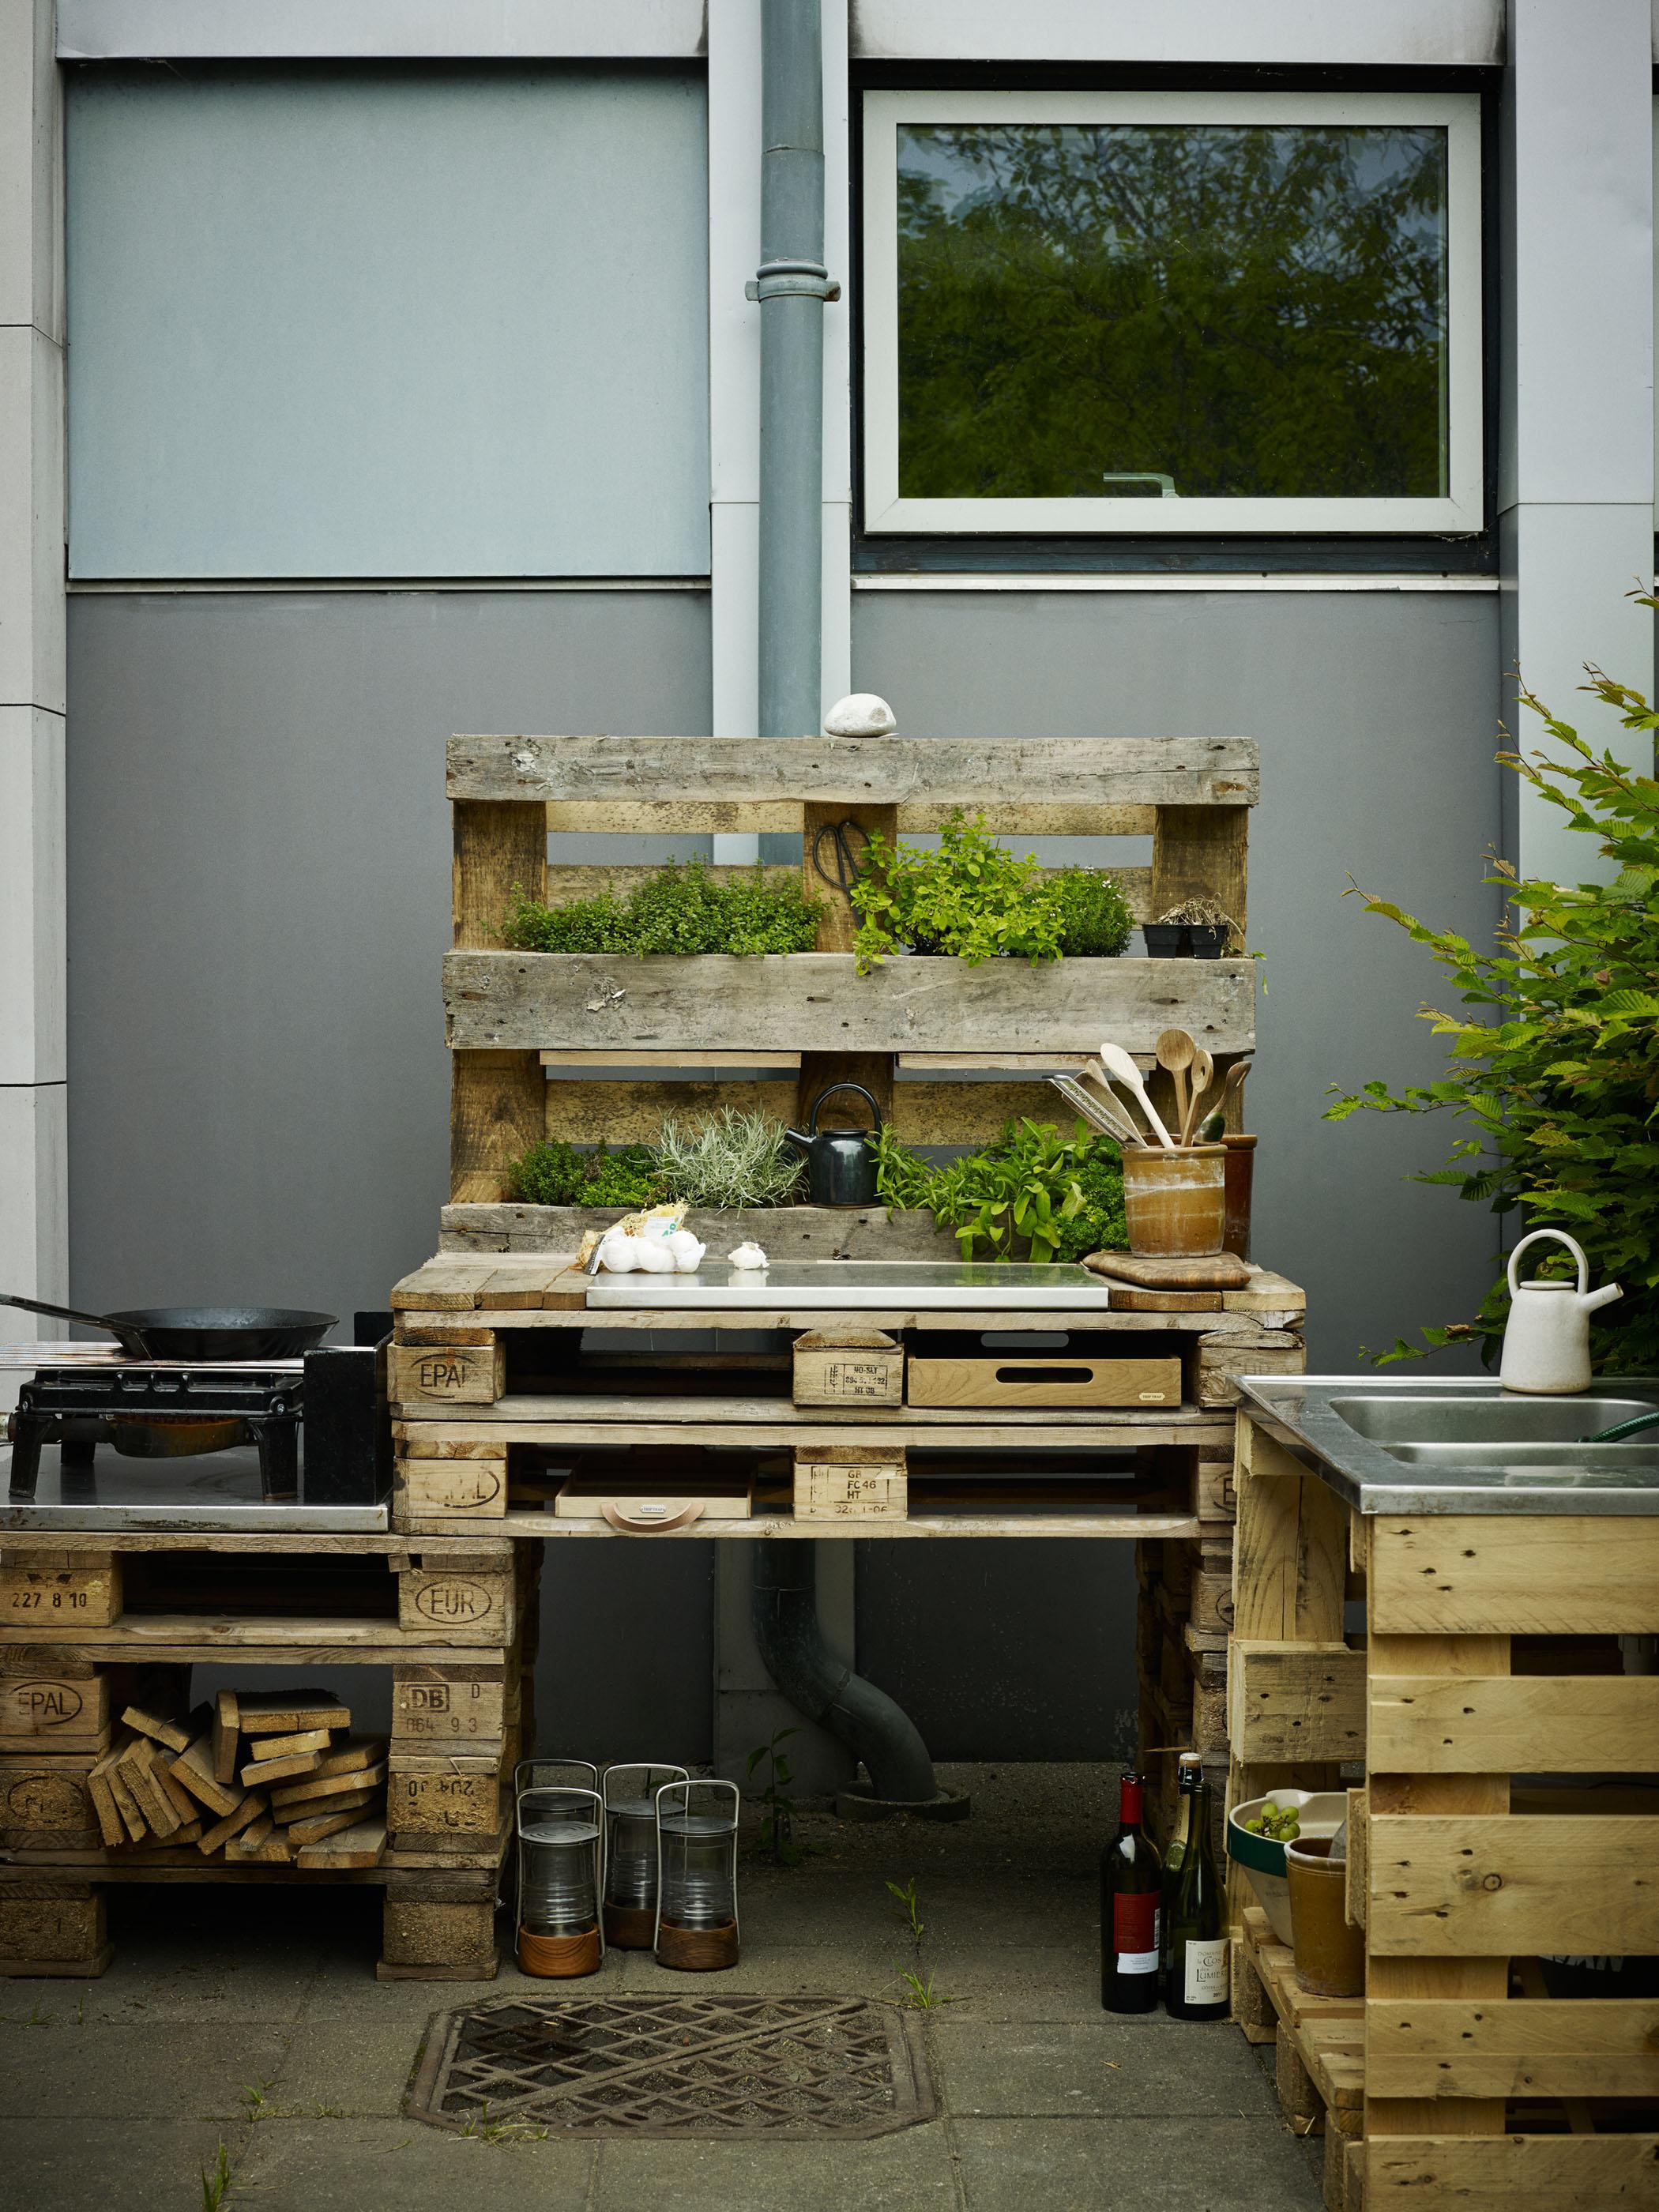 DIY: Outdoorküche aus Paletten bauen #bastelidee #diy #geschirr #europalette #upcycling #pflanzendeko #palettentisch #palettenmöbel #palettenregal ©Skagerak